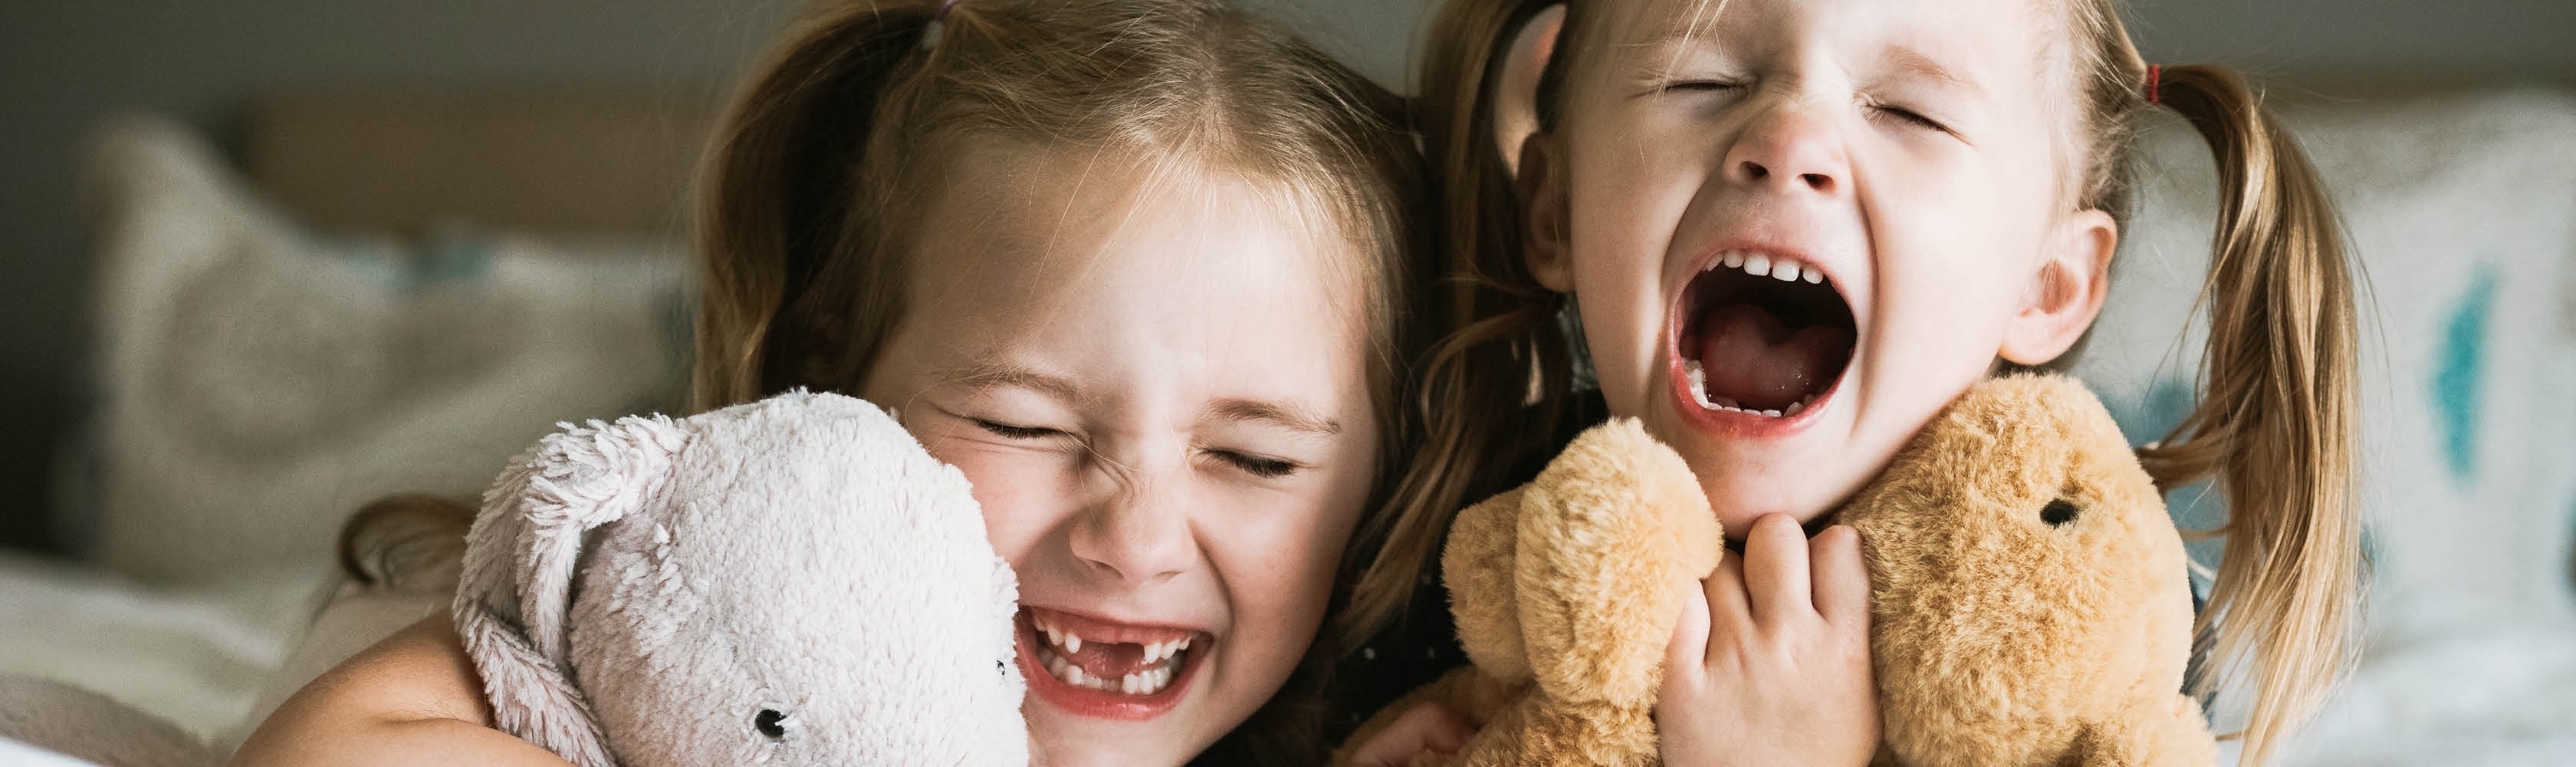 Zwei Mädchen lachen. Eine Zahnversicherung lohnt sich, besonders für Kinder.